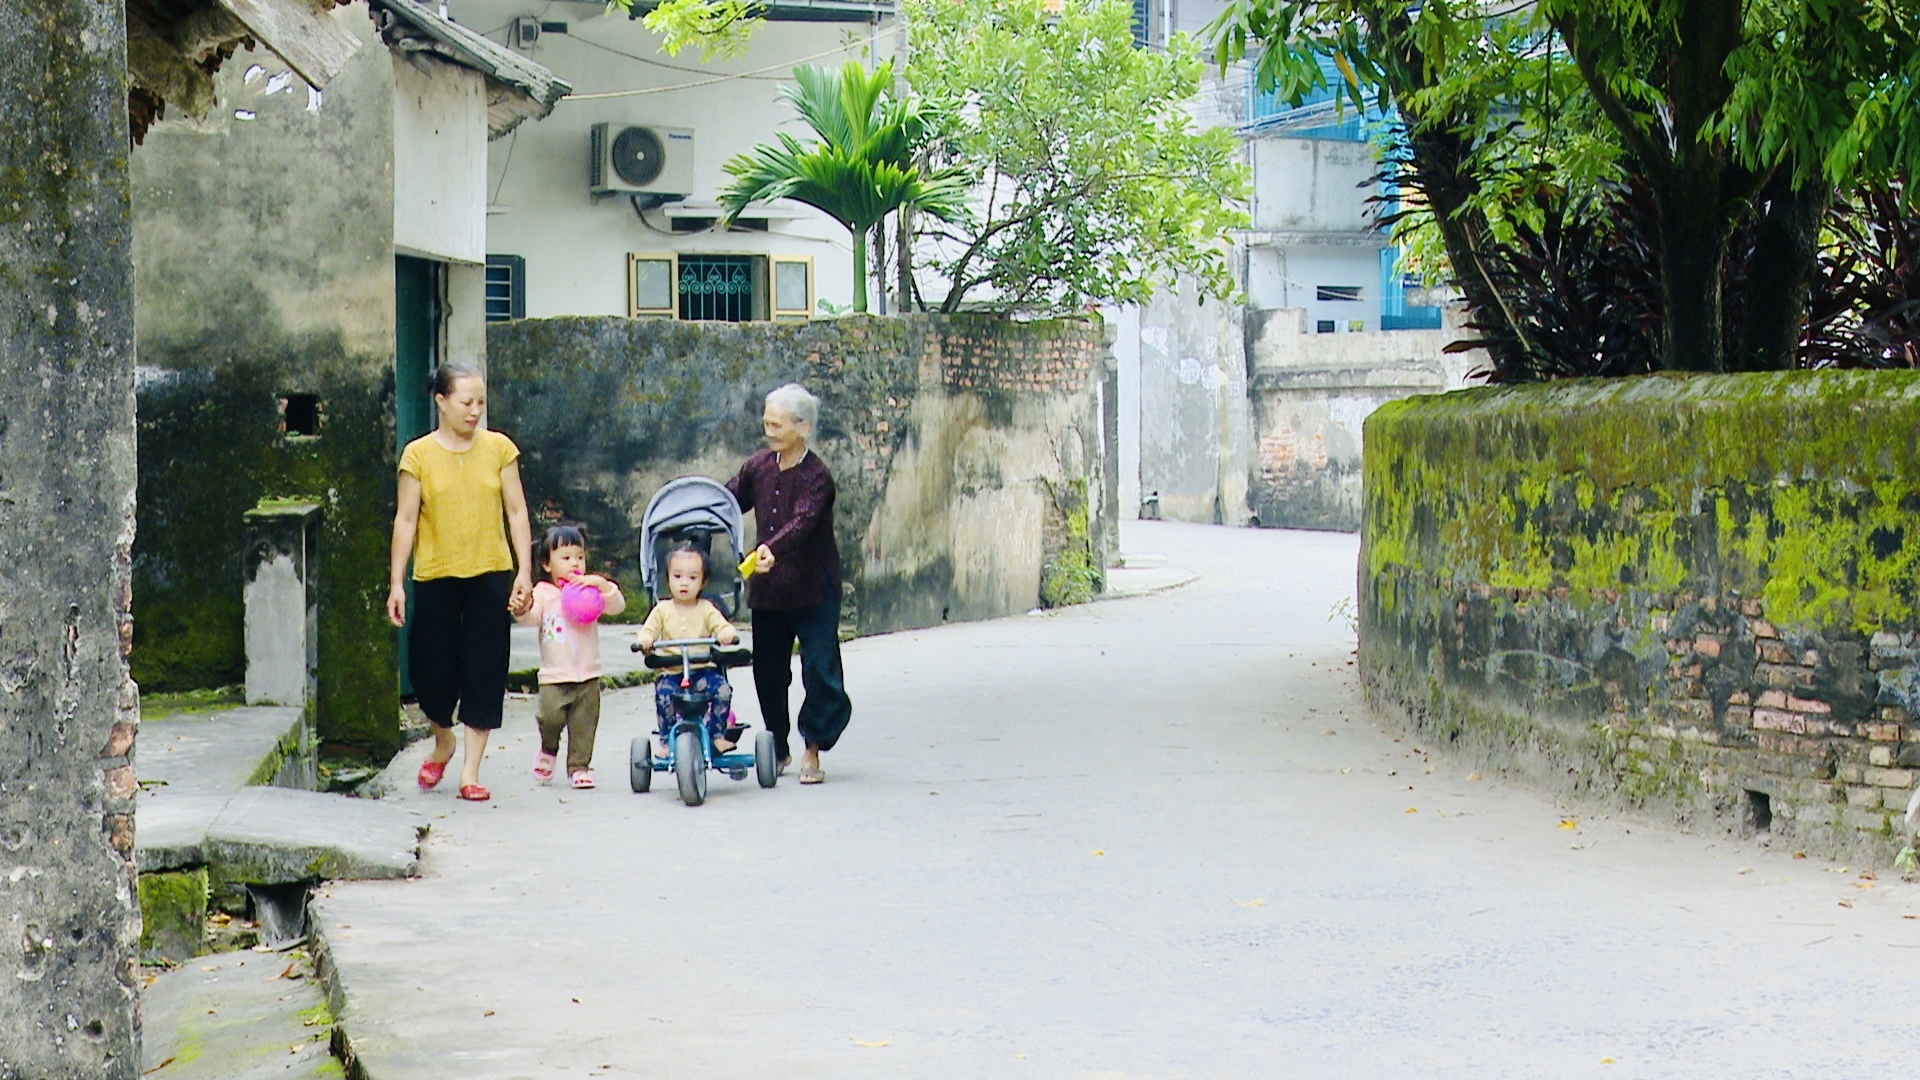 Nông thôn mới Ứng Hòa: Đường làng đẹp như phim, lại có khu vui chơi như công viên, ai cũng đánh giá hài lòng - Ảnh 2.